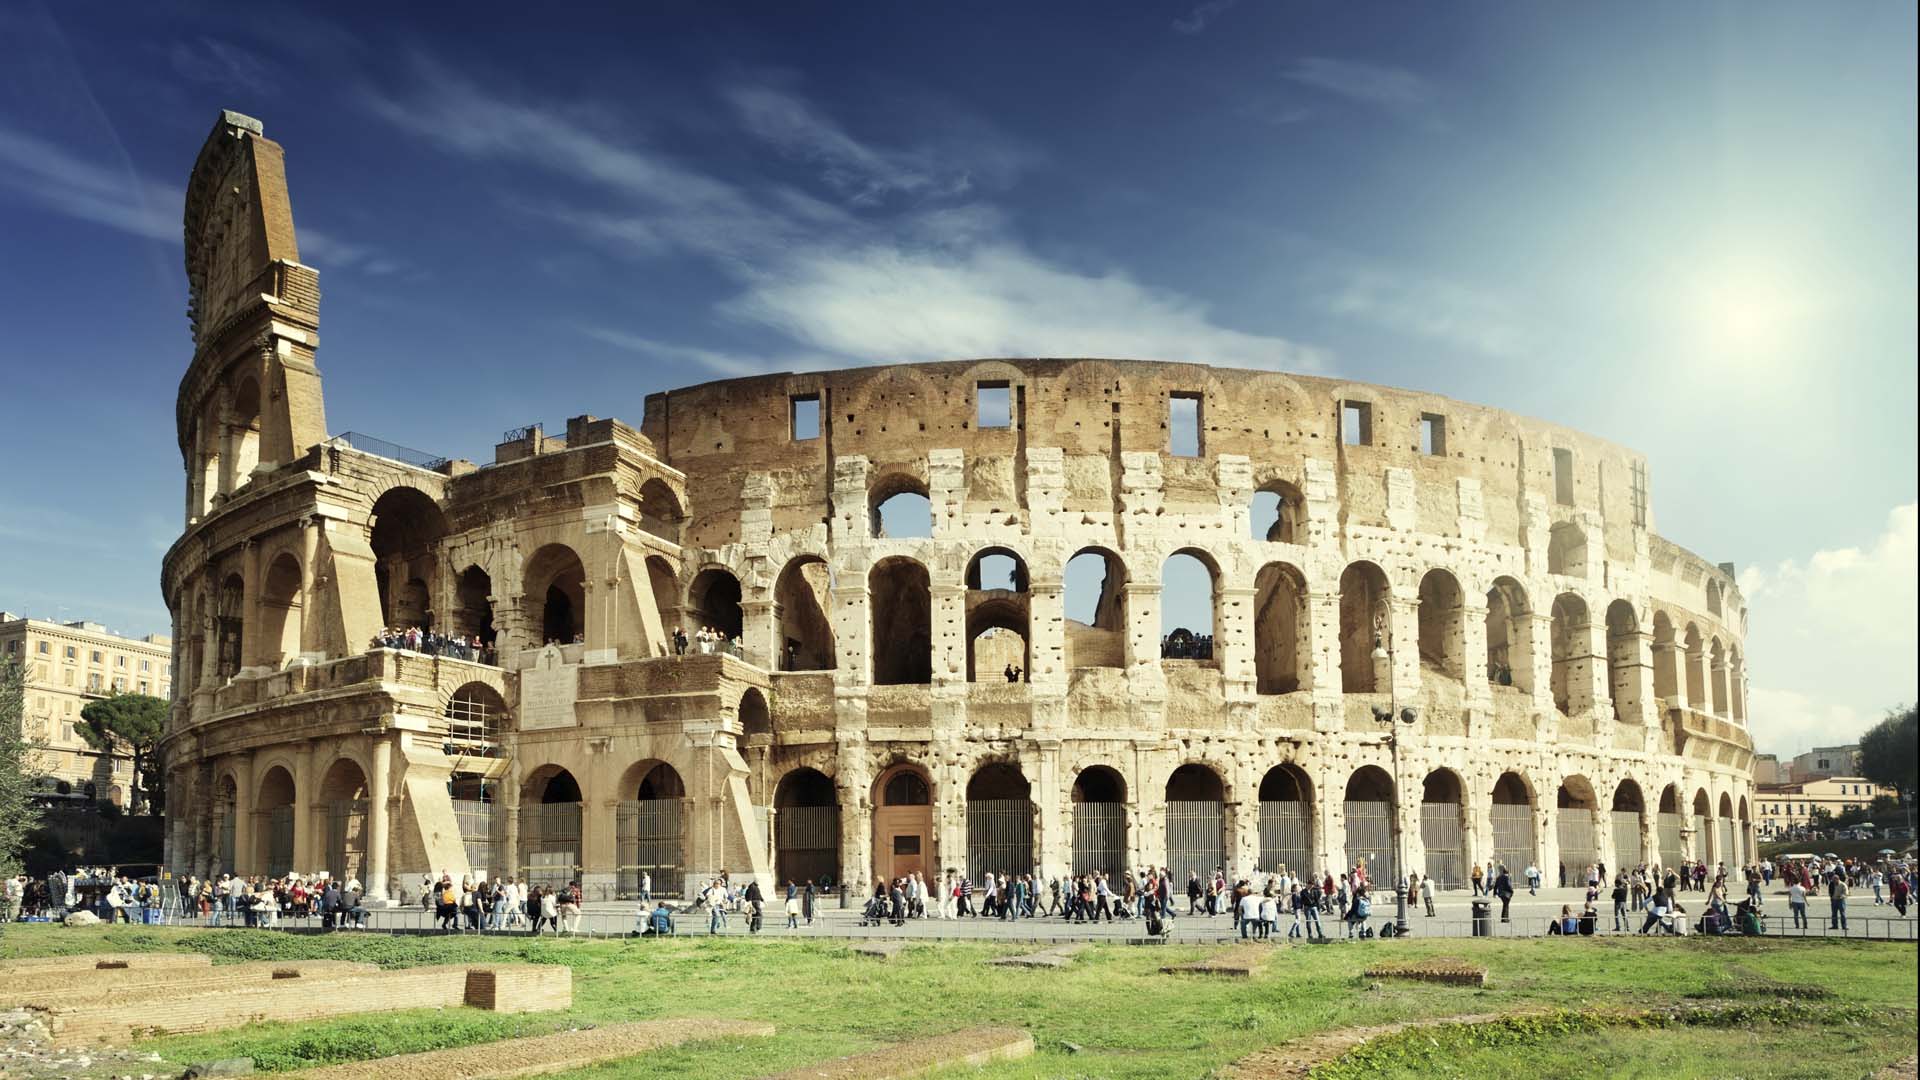 Entre los sitios en los cuales se elevará la vigilancia están el Coliseo de Roma, las ruinas de Pompeya y la Galería de la Academia de Venecia